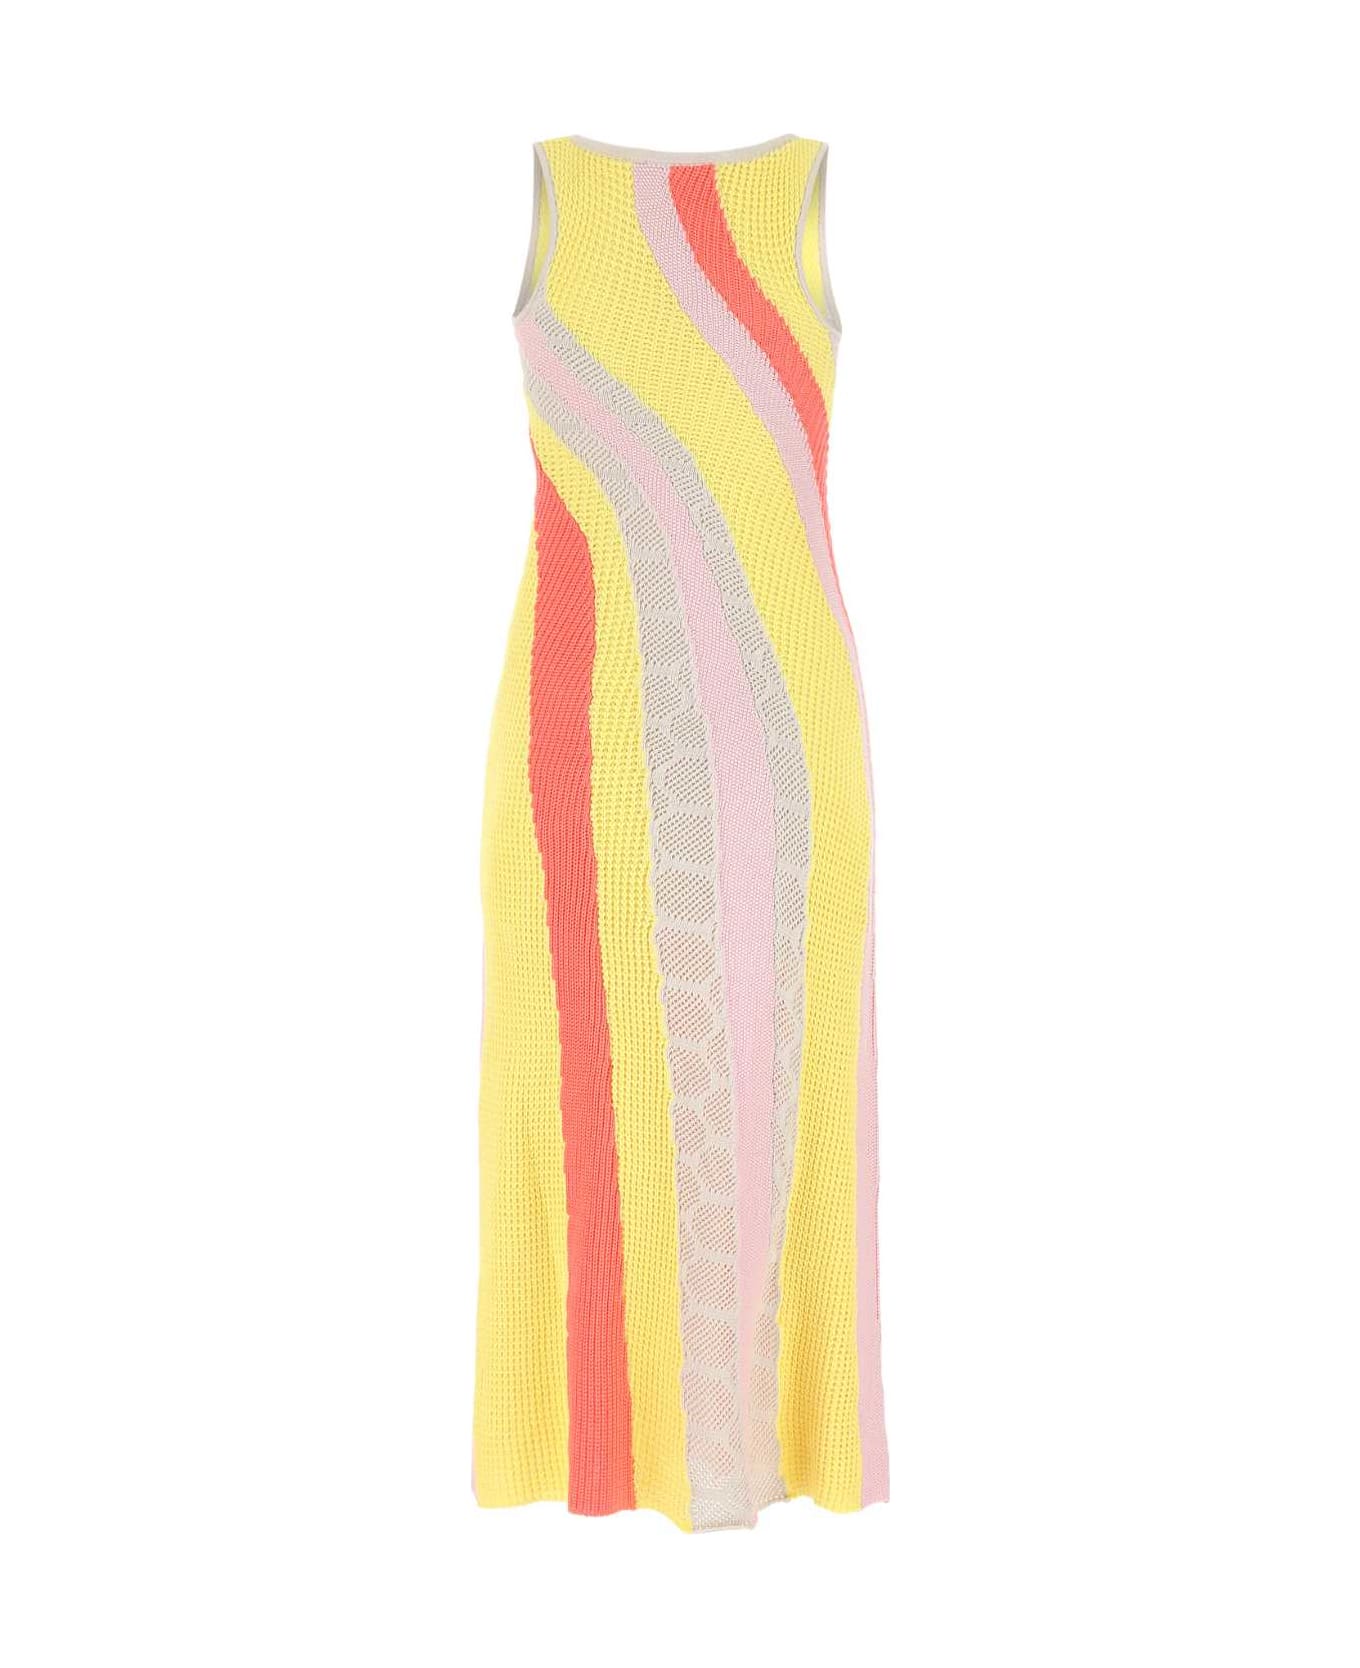 Koché Multicolor Cotton Long-cut Dress - 001F